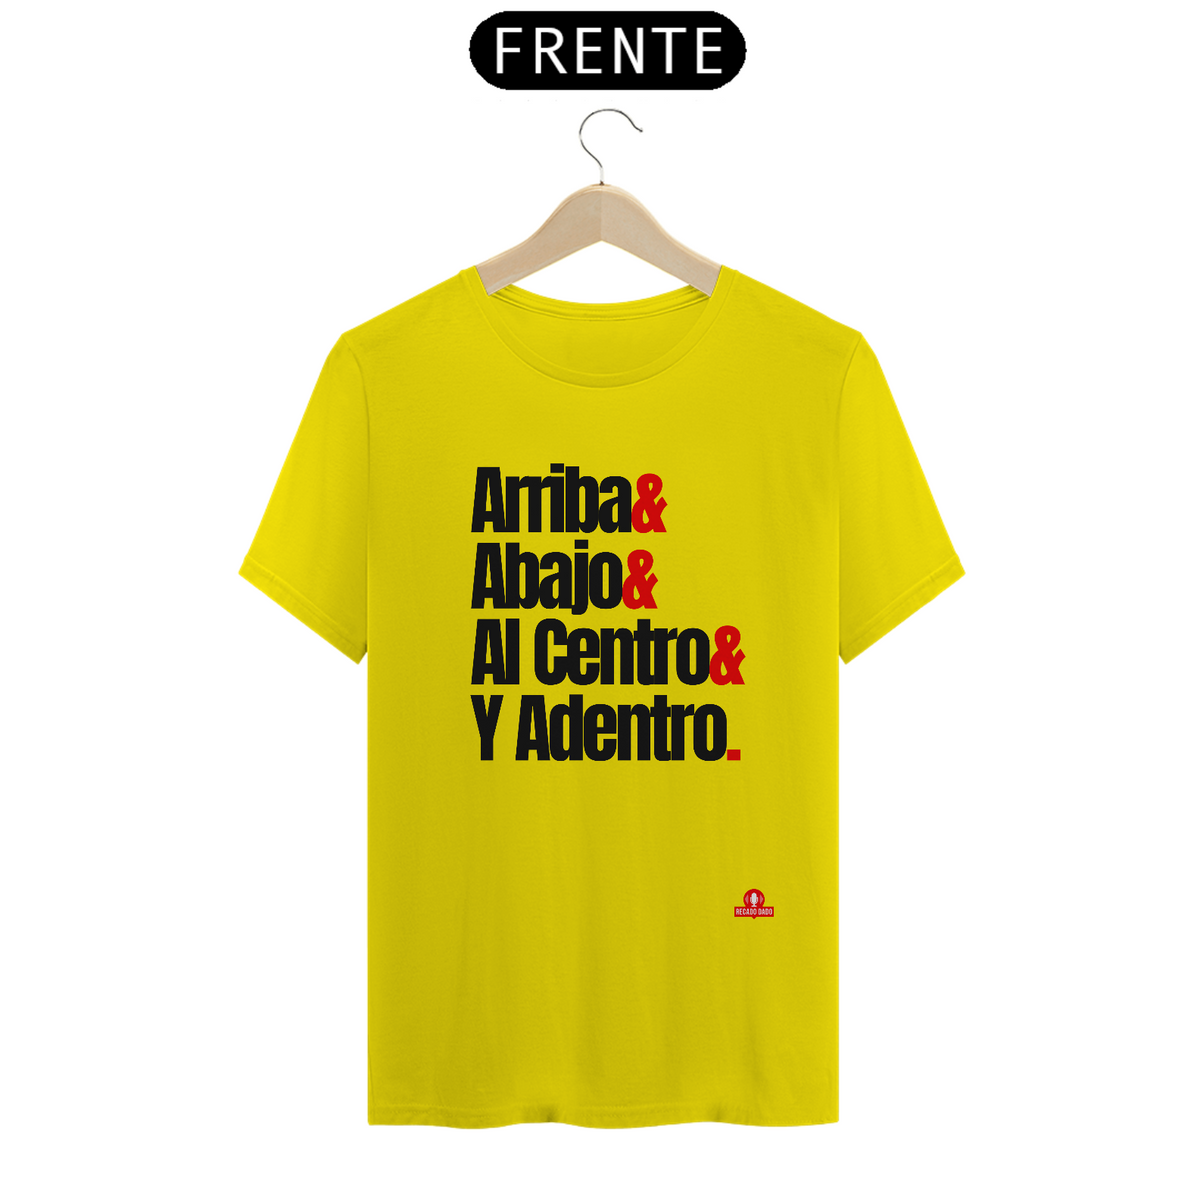 Nome do produto: Camiseta masculina com a frase do ritual da tequila: arriba, abajo, al centro y adentro.